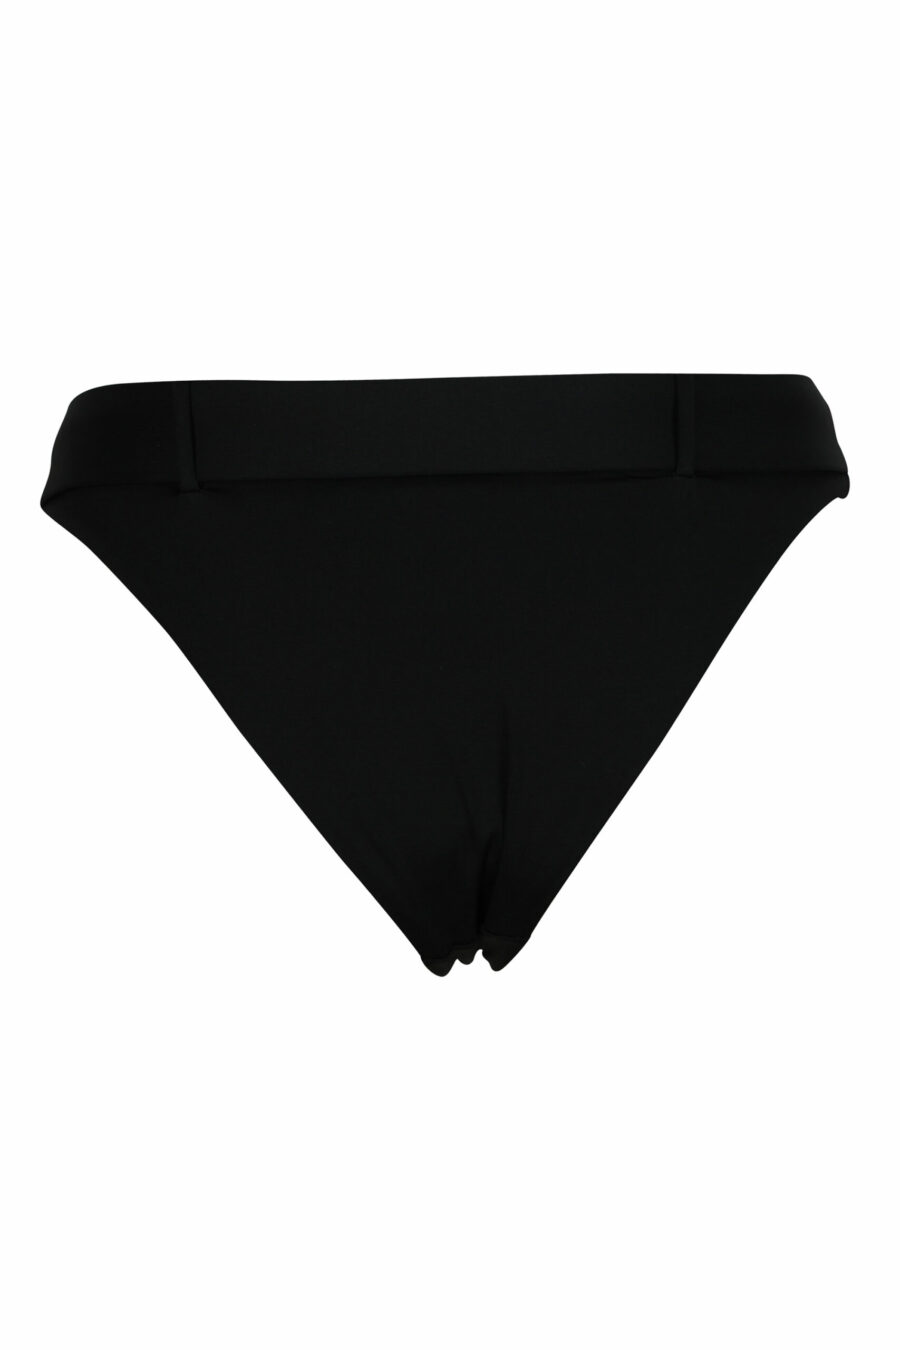 Bas de bikini noir avec boucle de ceinture - 667113654980 1 échelle